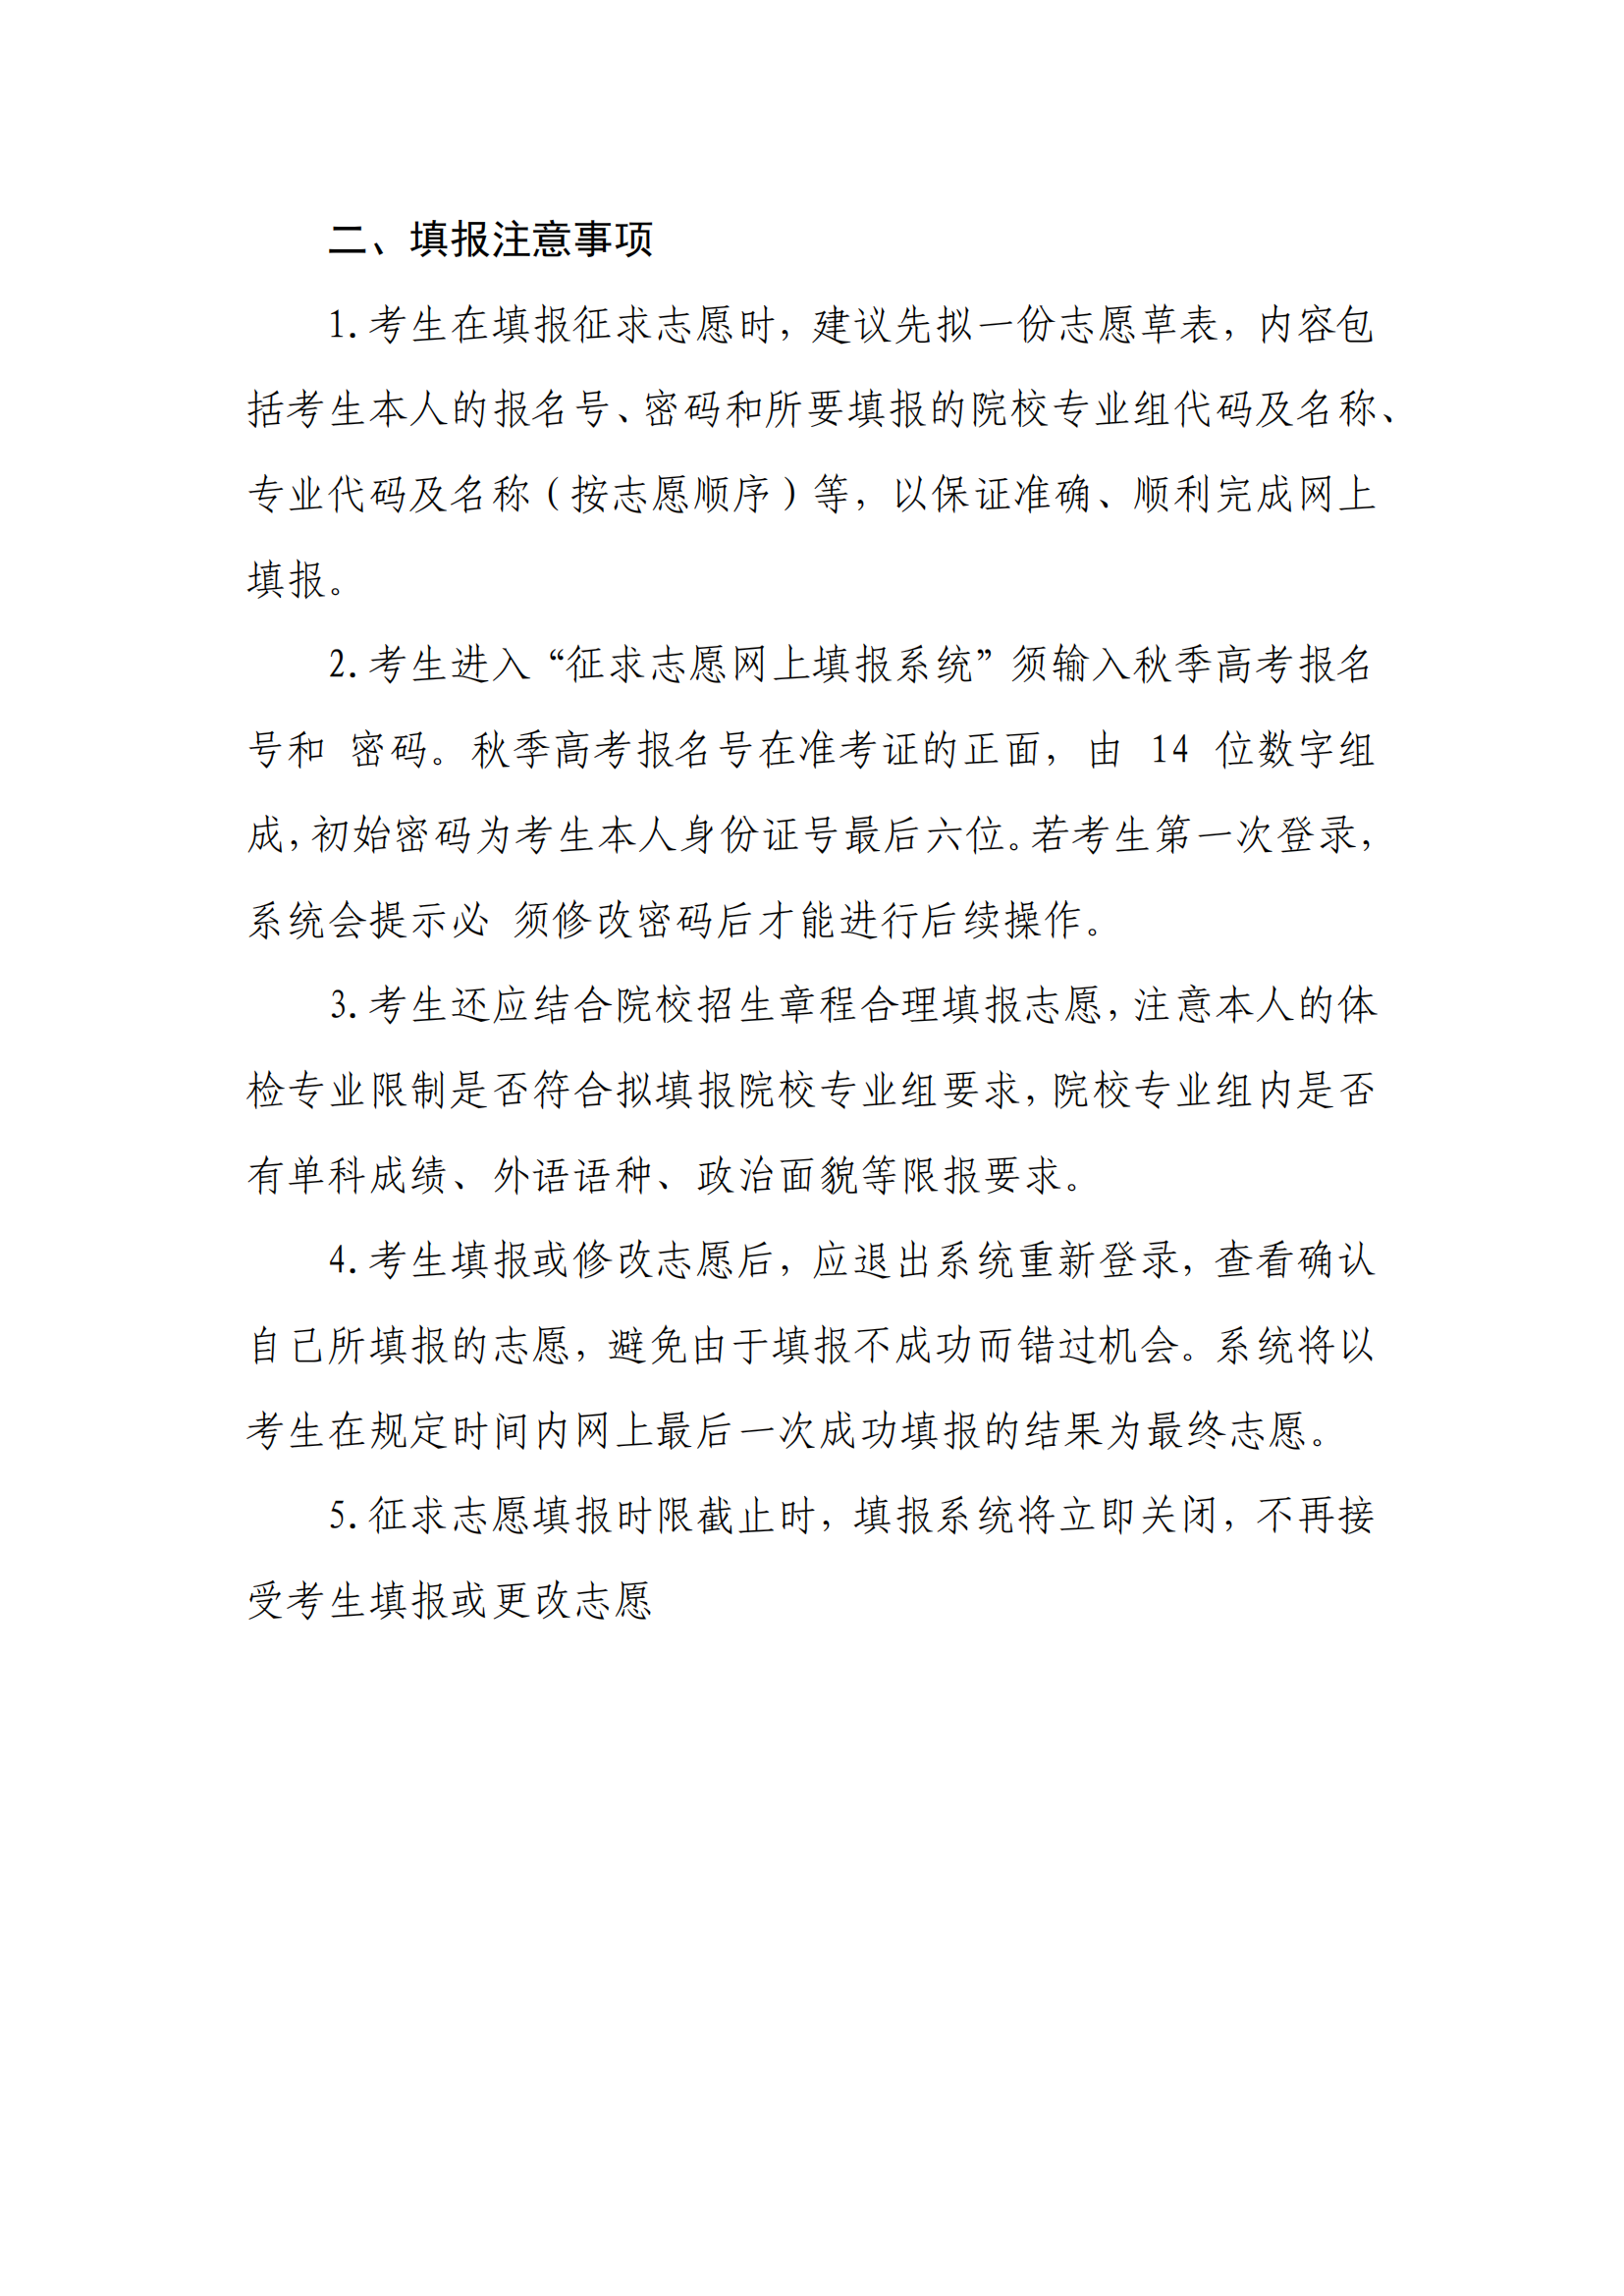 上海：本科普通批次第一征求志愿填报办法